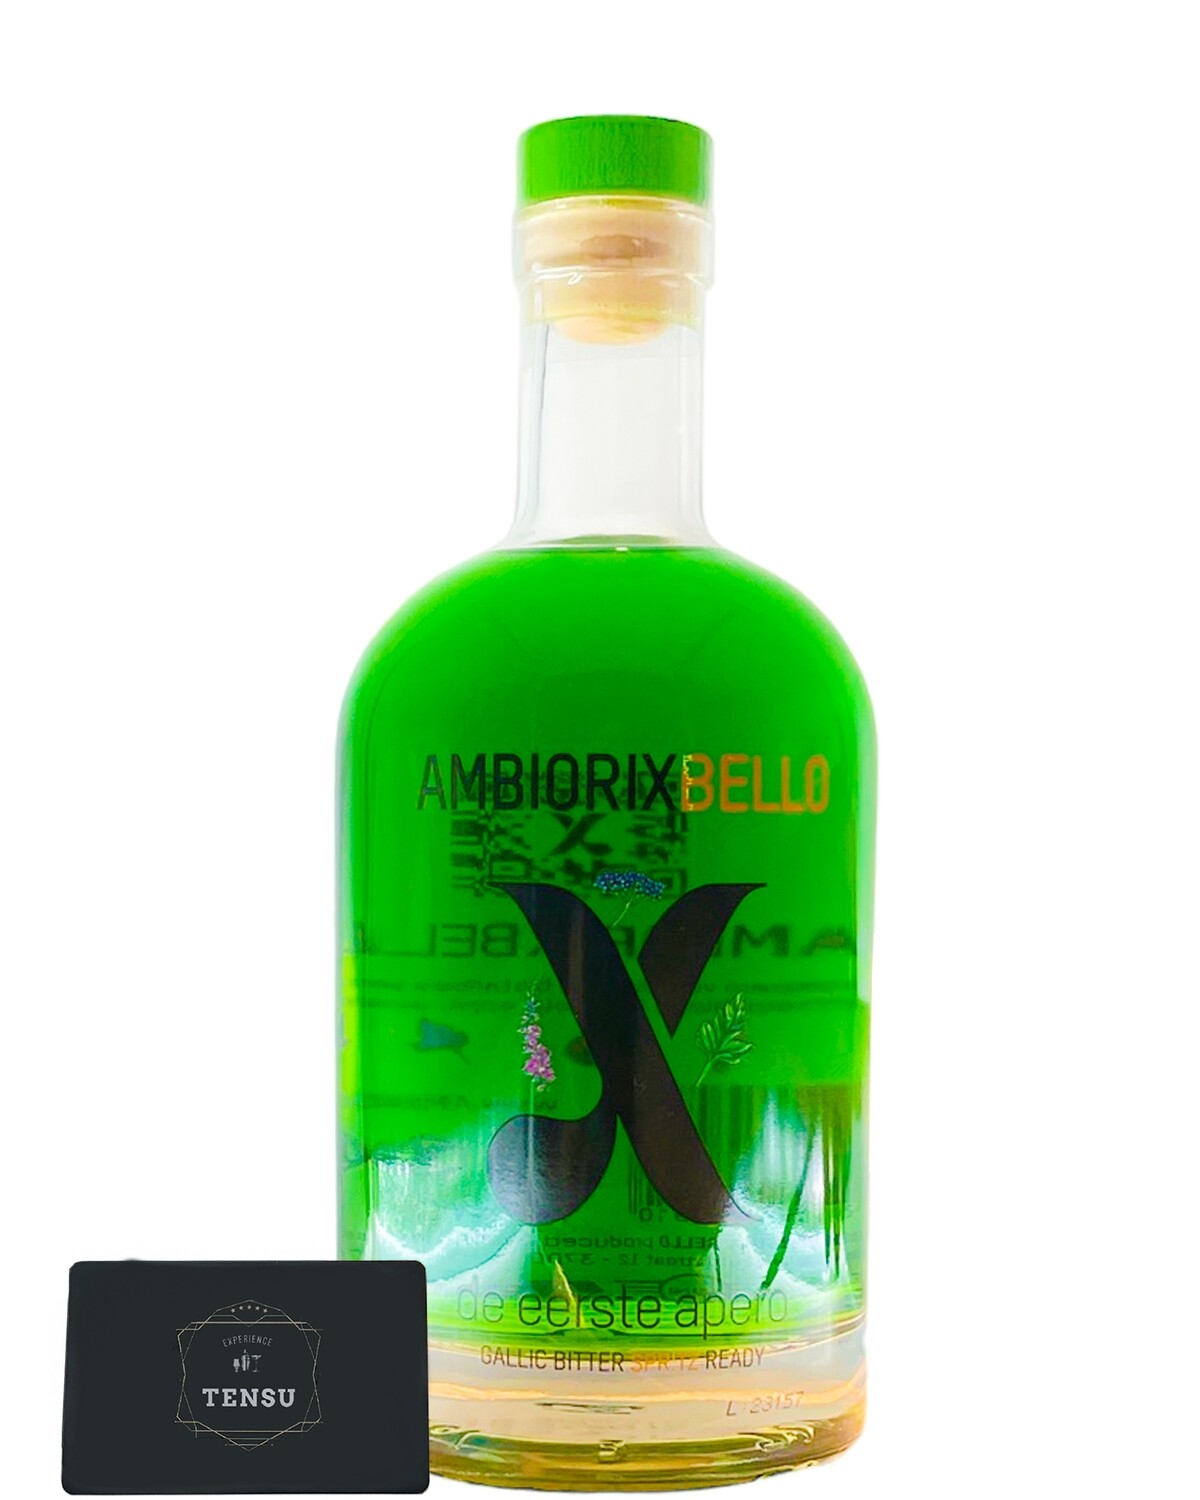 Ambiorix Bello -De eerste apero- Gallic Bitter Spritz 15.0